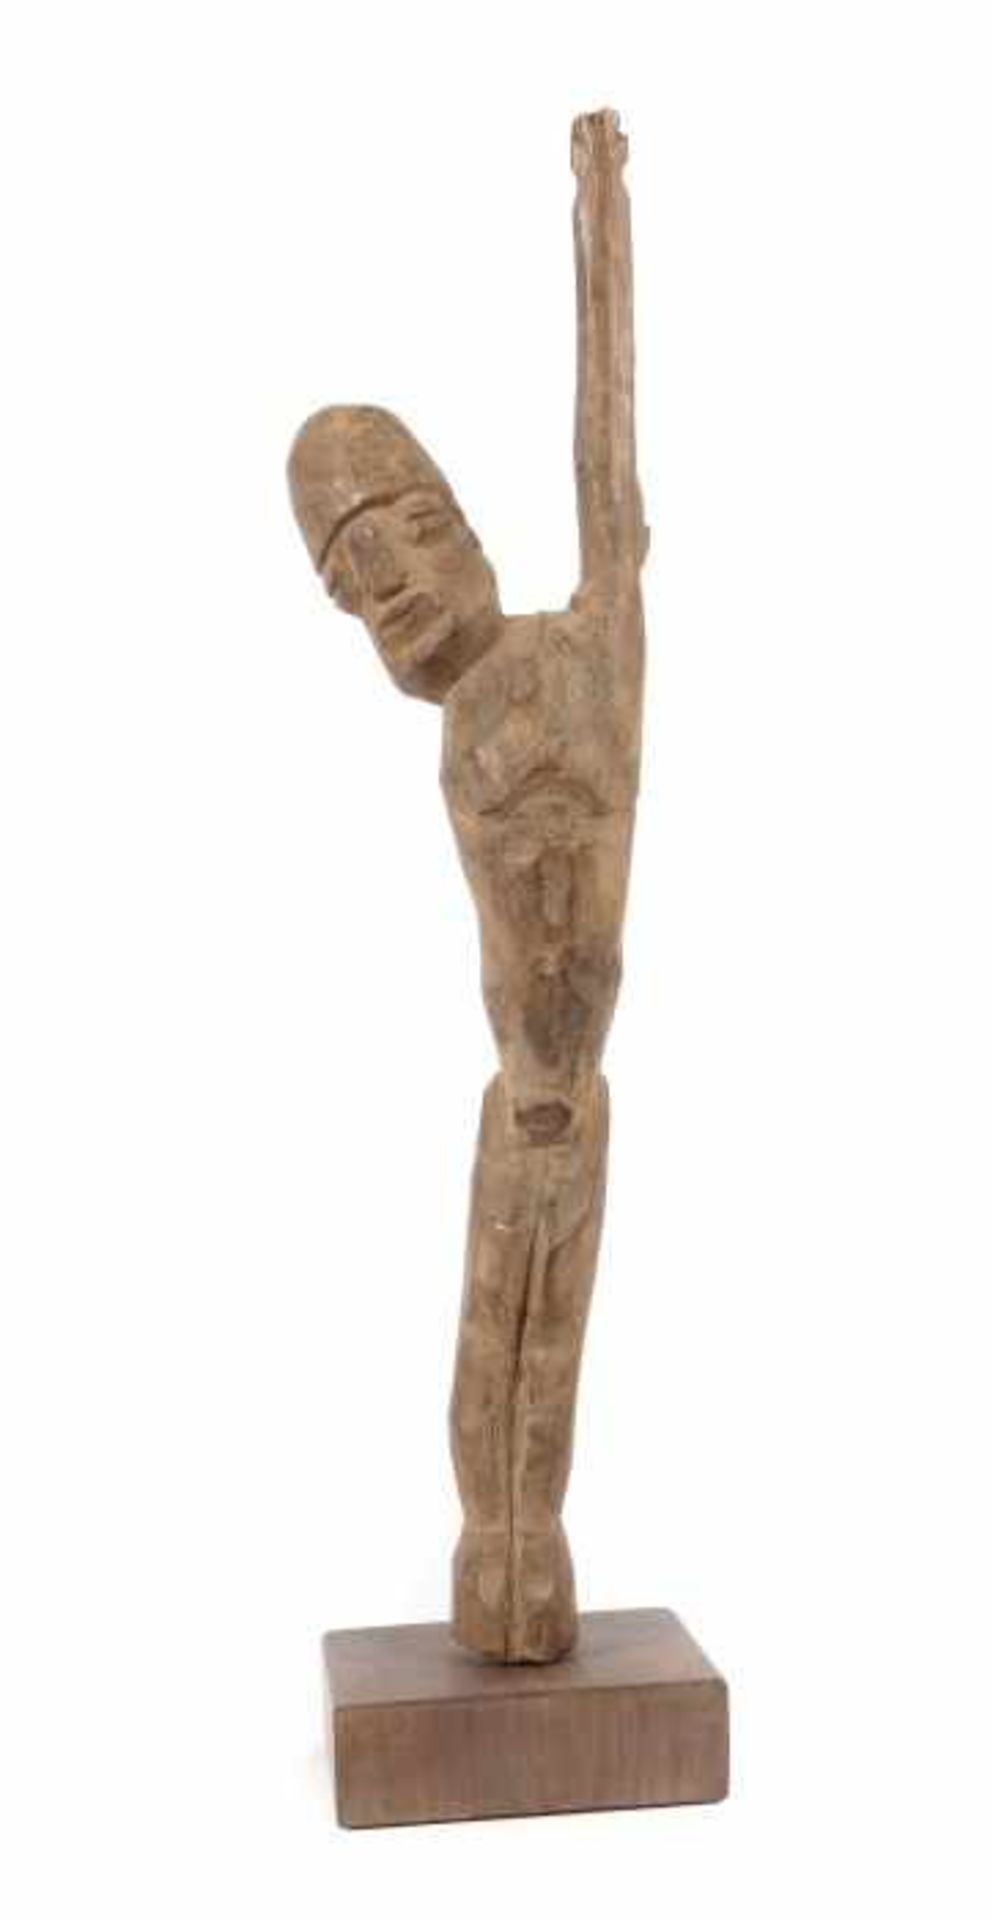 Bateba Figur der Lobi Burkina Faso, Stamm der Lobi, Hartholz mit tls. gräulicher Patina, stehende